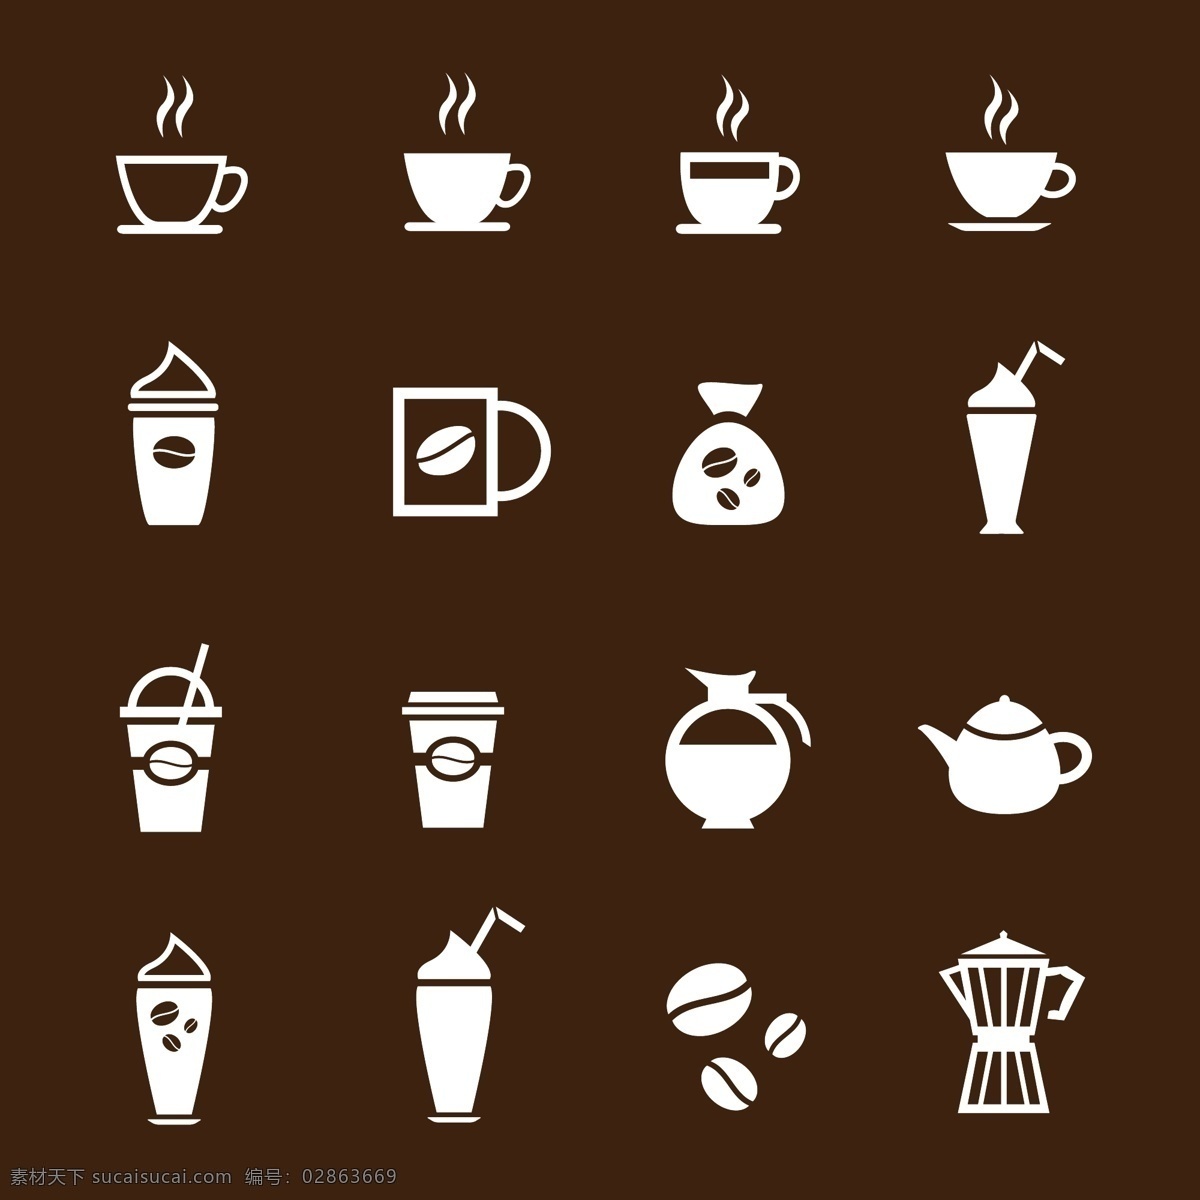 咖啡图标设计 咖啡杯子 咖啡标志 咖啡图标 咖啡标签 标志设计 餐饮美食 生活百科 矢量素材 黑色